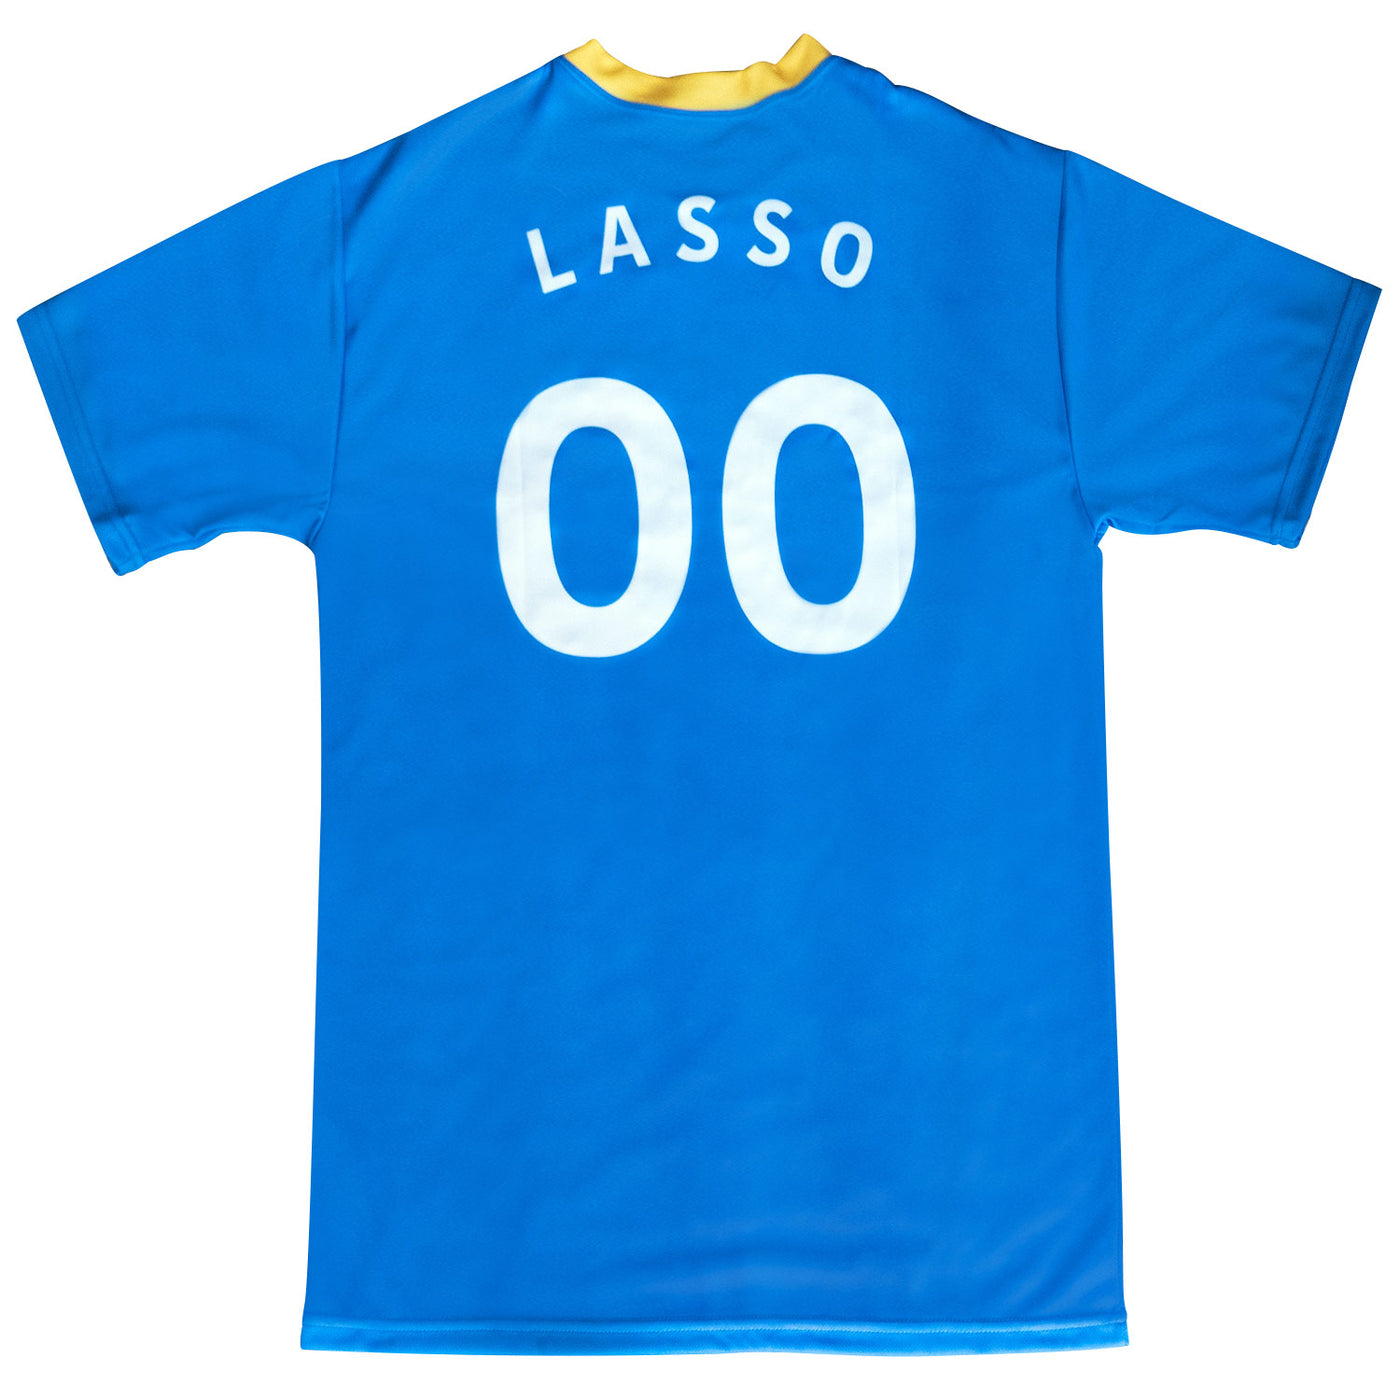 Exclusive Ted Lasso A.F.C. Richmond Season 2 Personalized Replica Jersey